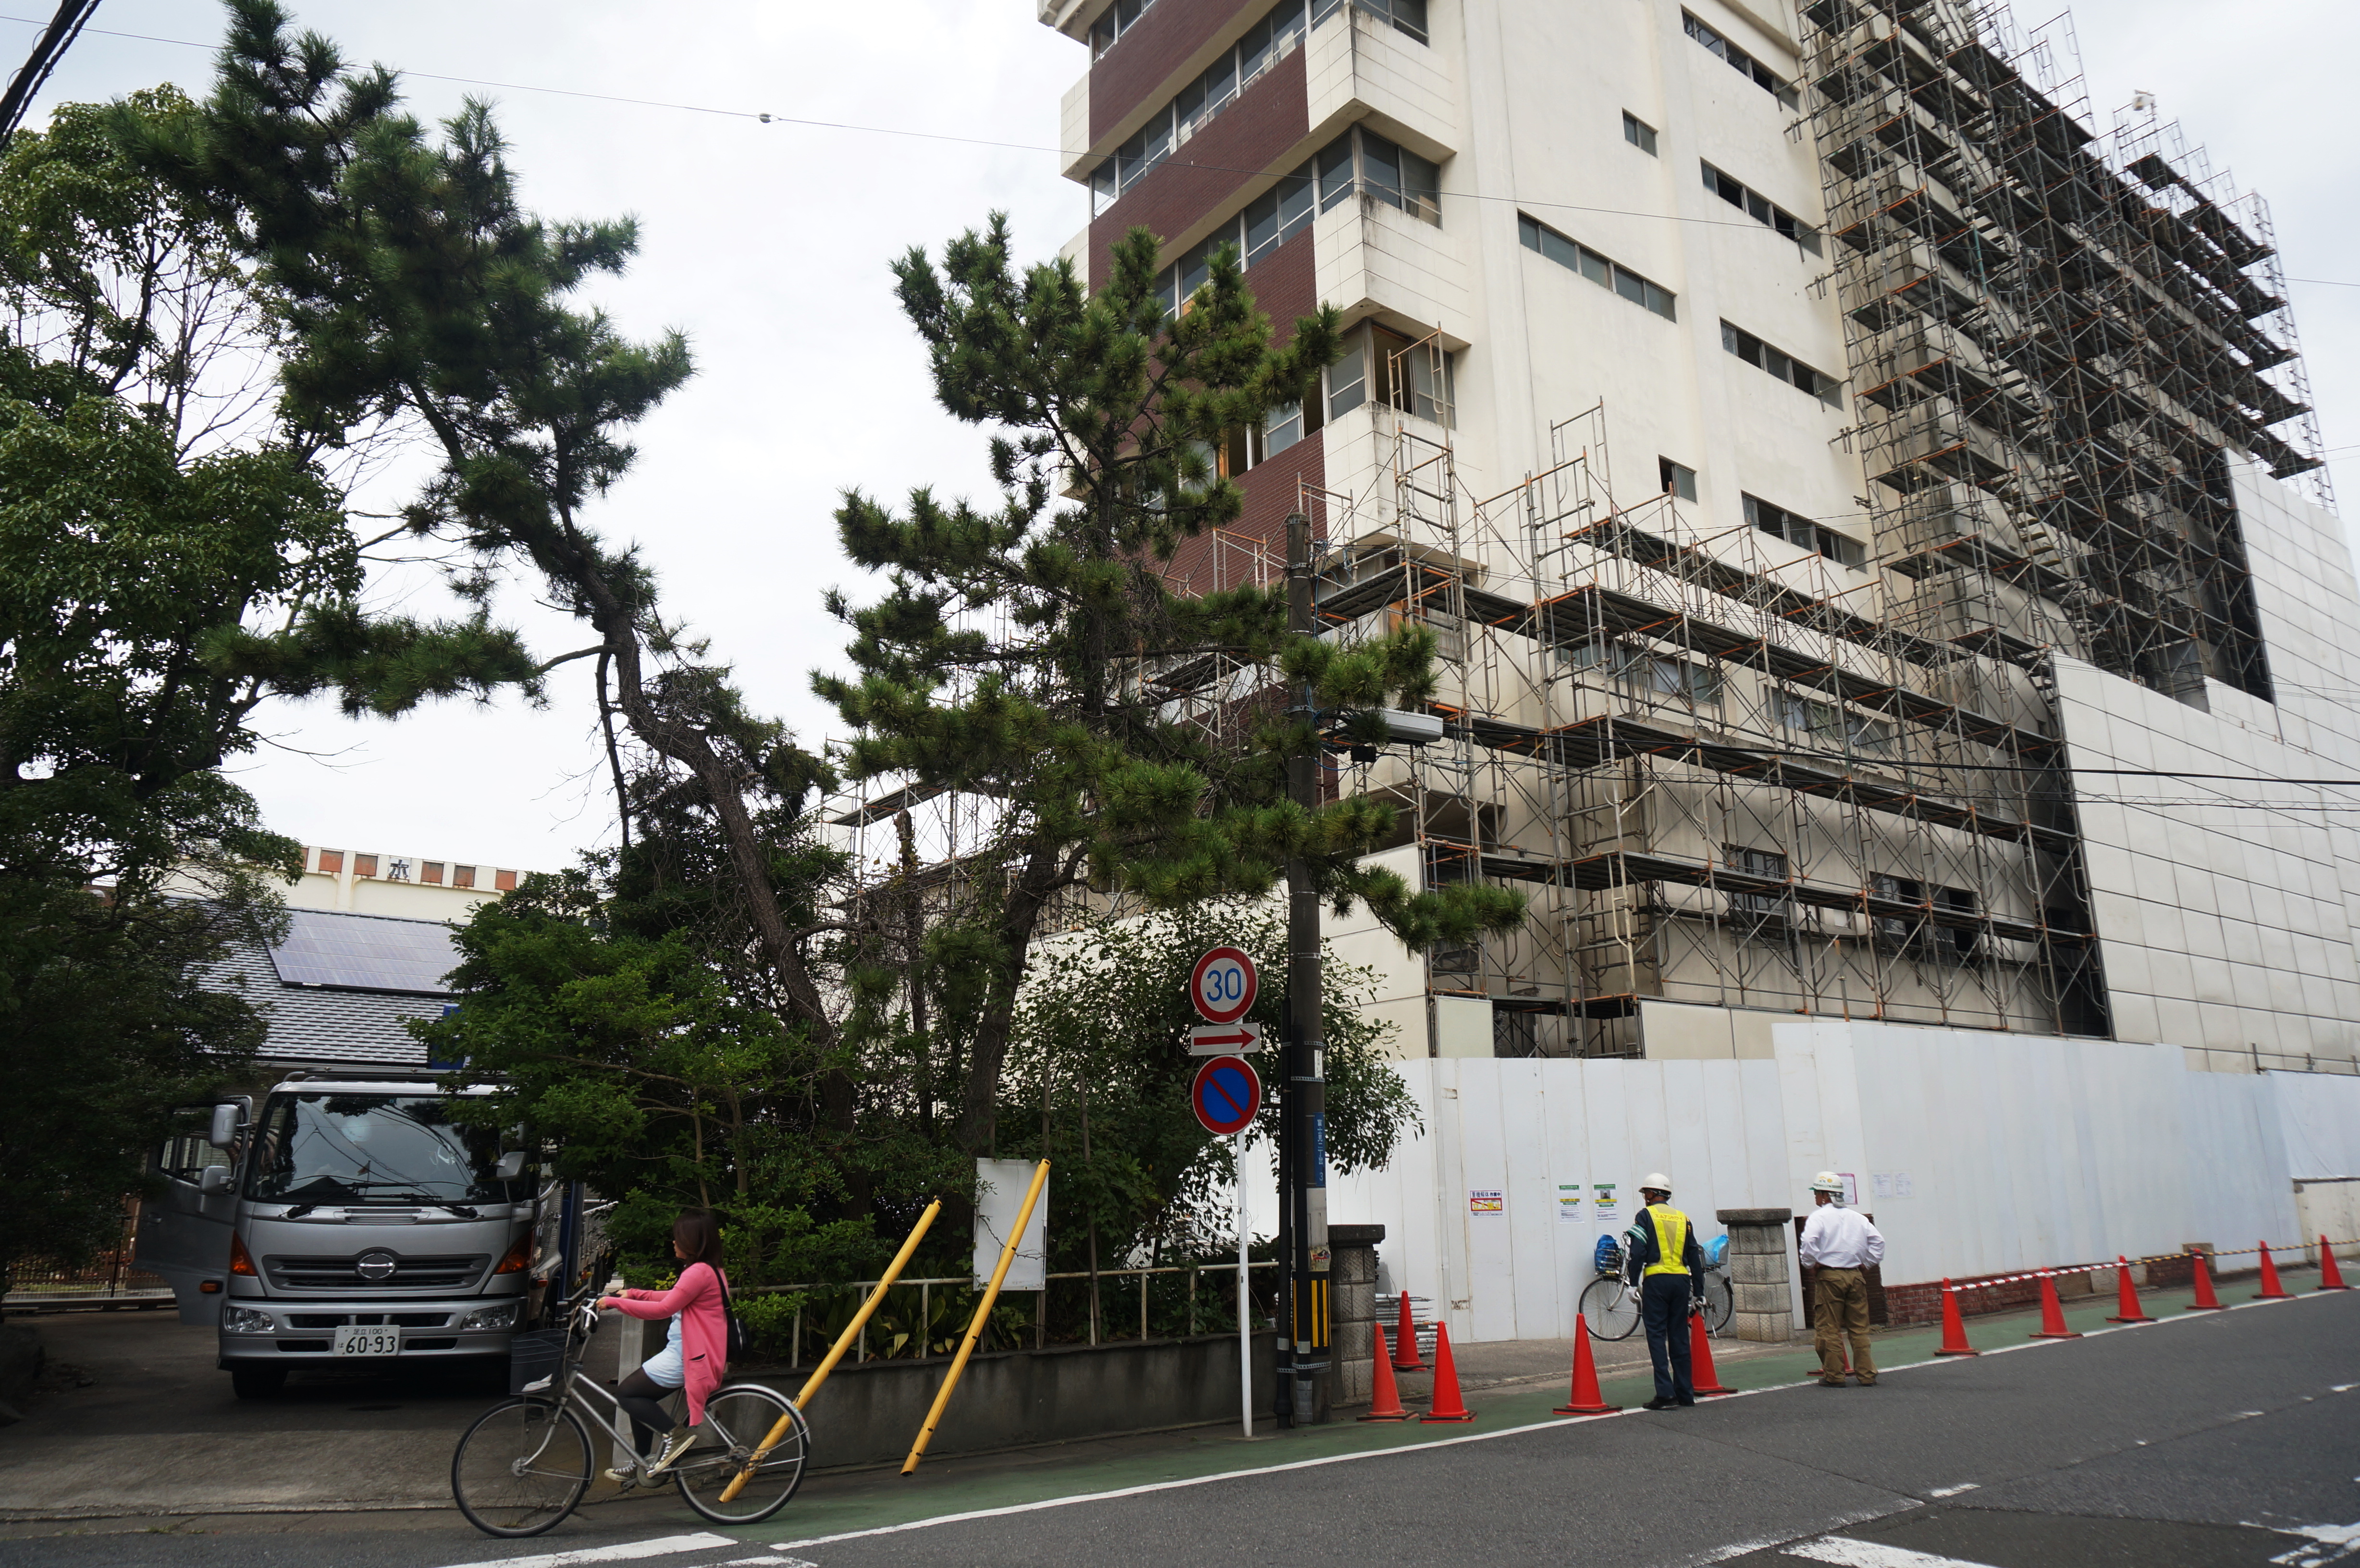 木更津温泉ホテルの取り壊しが始まっている Ogu S Blog かずさ便り ちょっとだけpcの話も